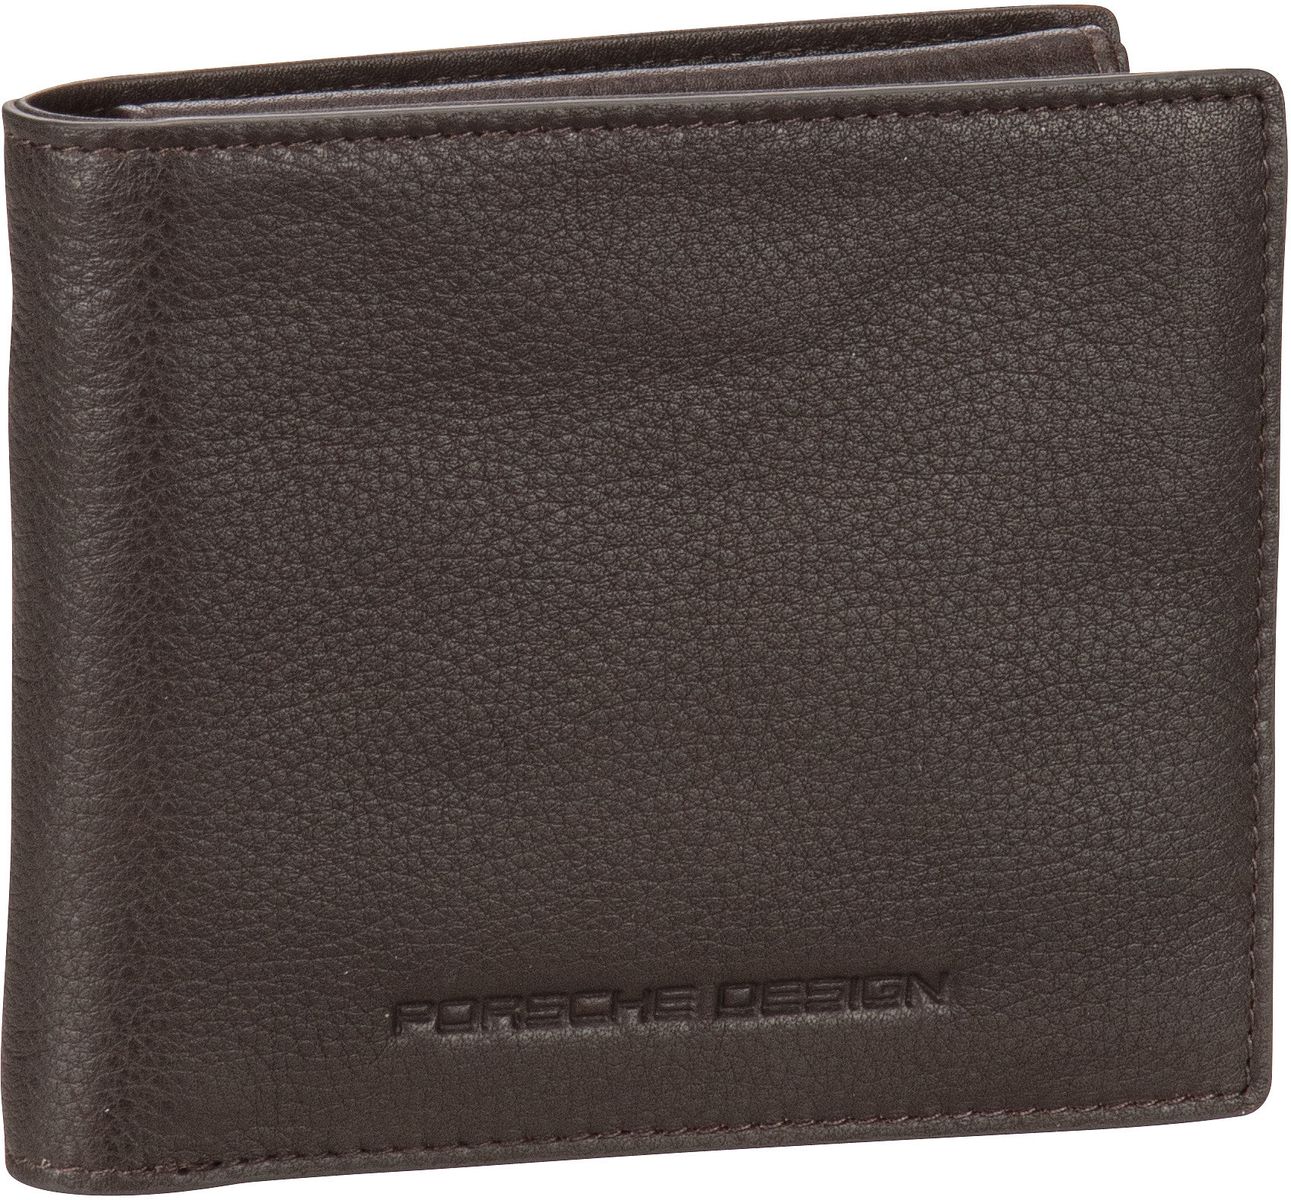 Porsche Design Business Wallet 9903 - Dark Brown